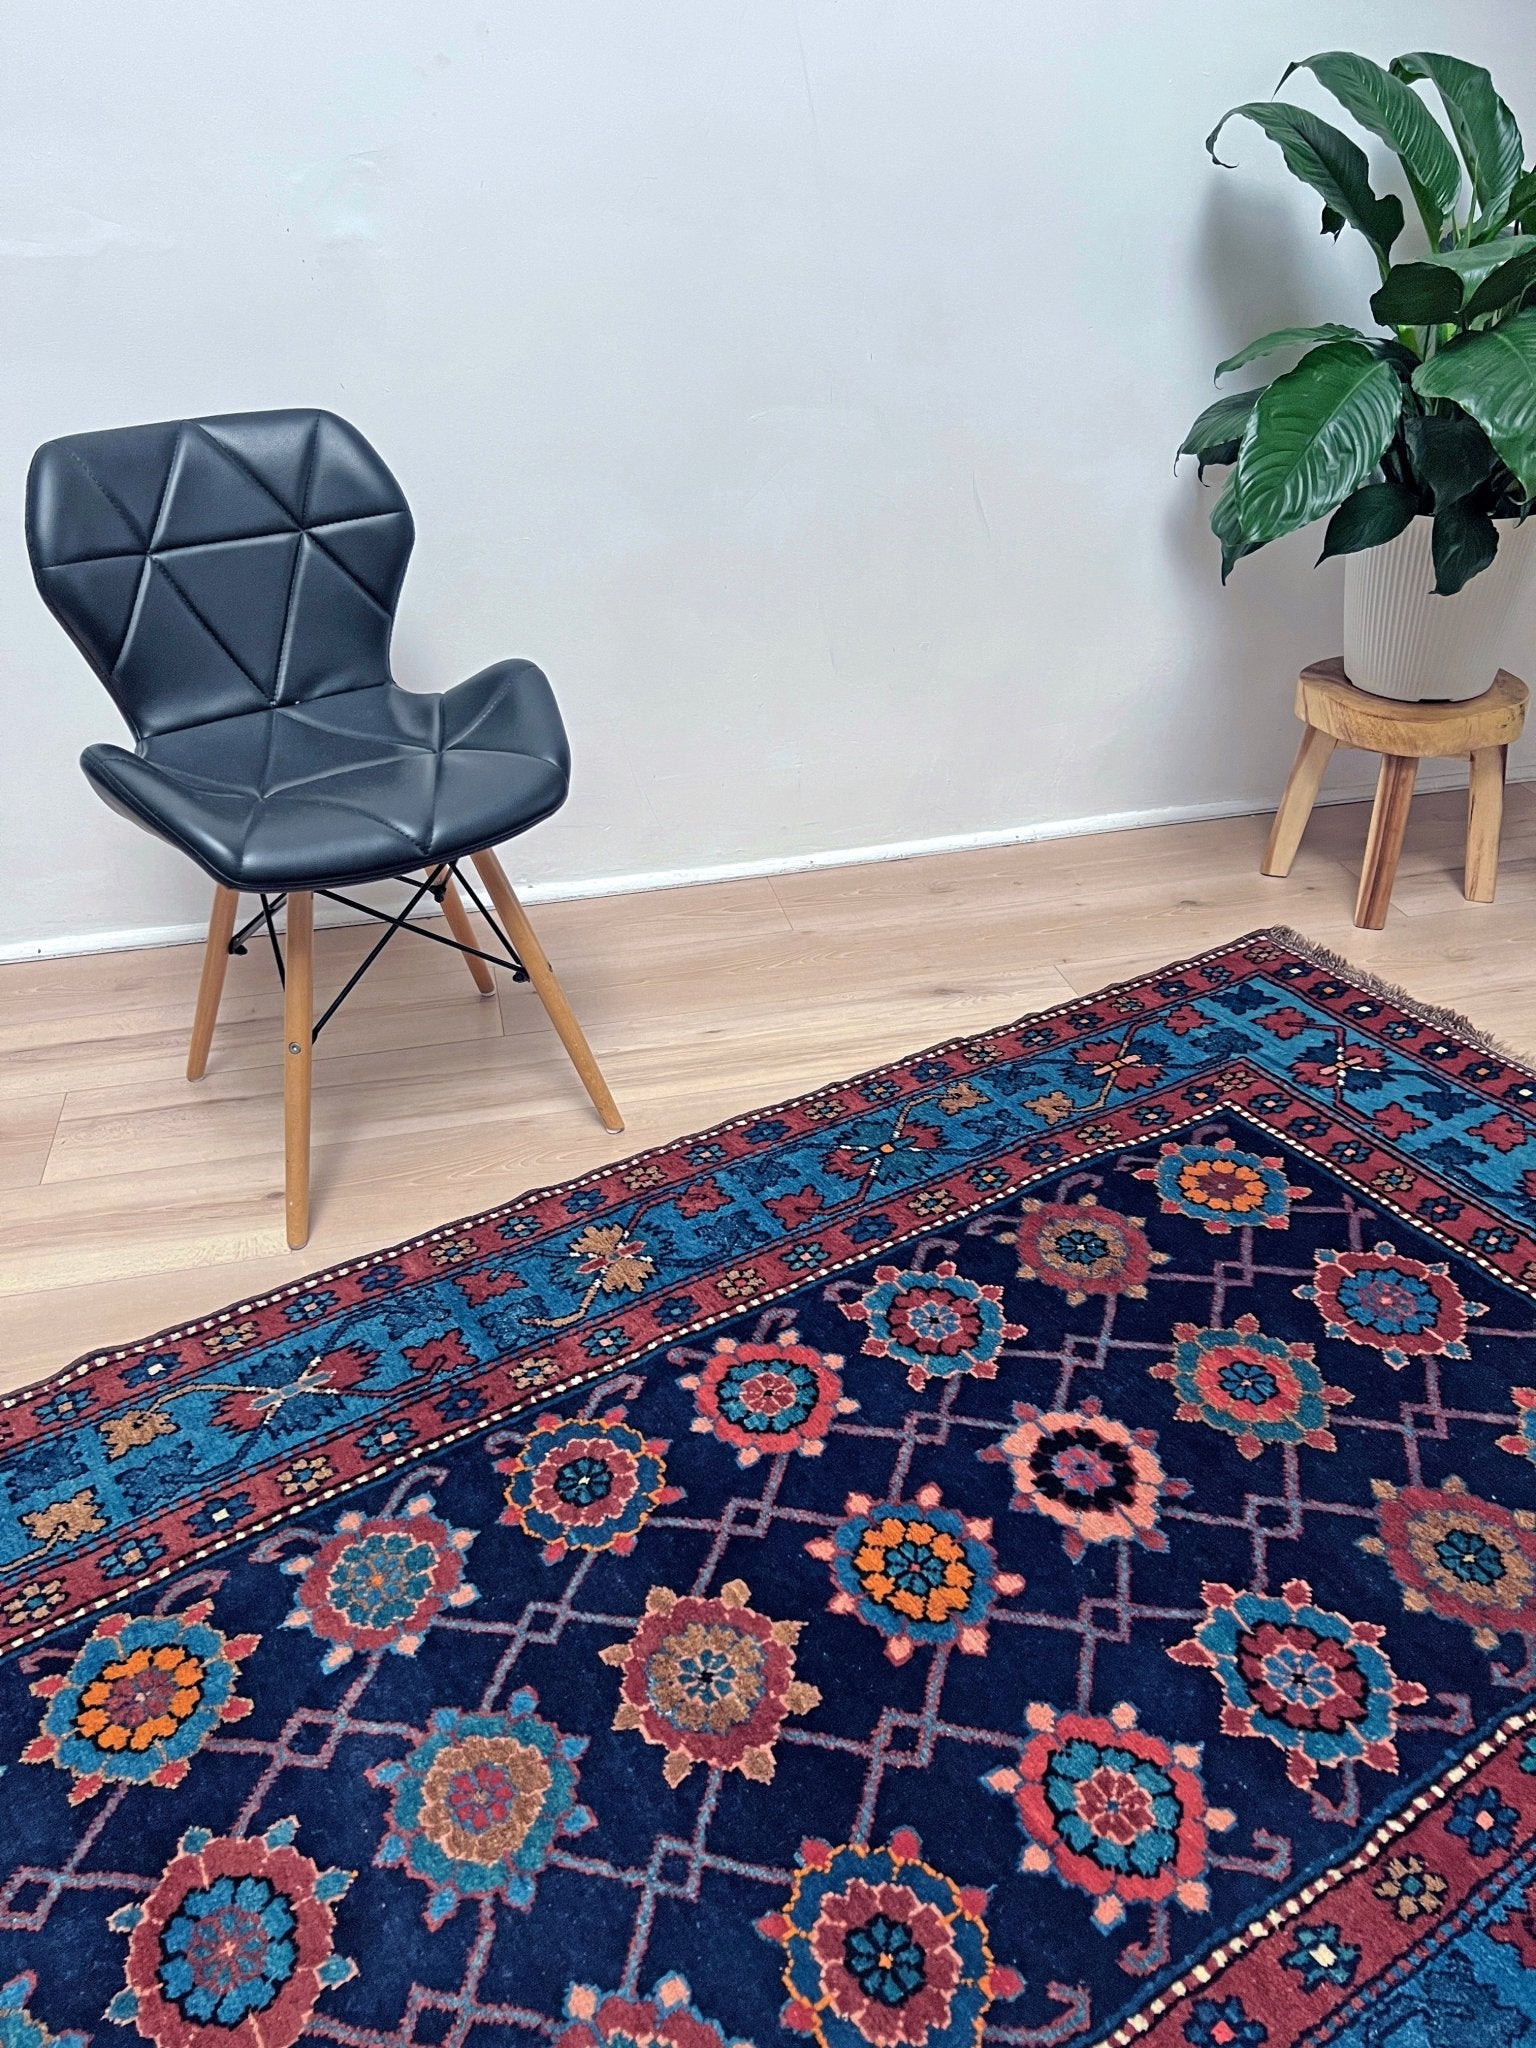 Caucasian blue oriental rug shop San Francisco Bay Area. Buy handmade carpet wool rug online Handmade rug store Berkeley